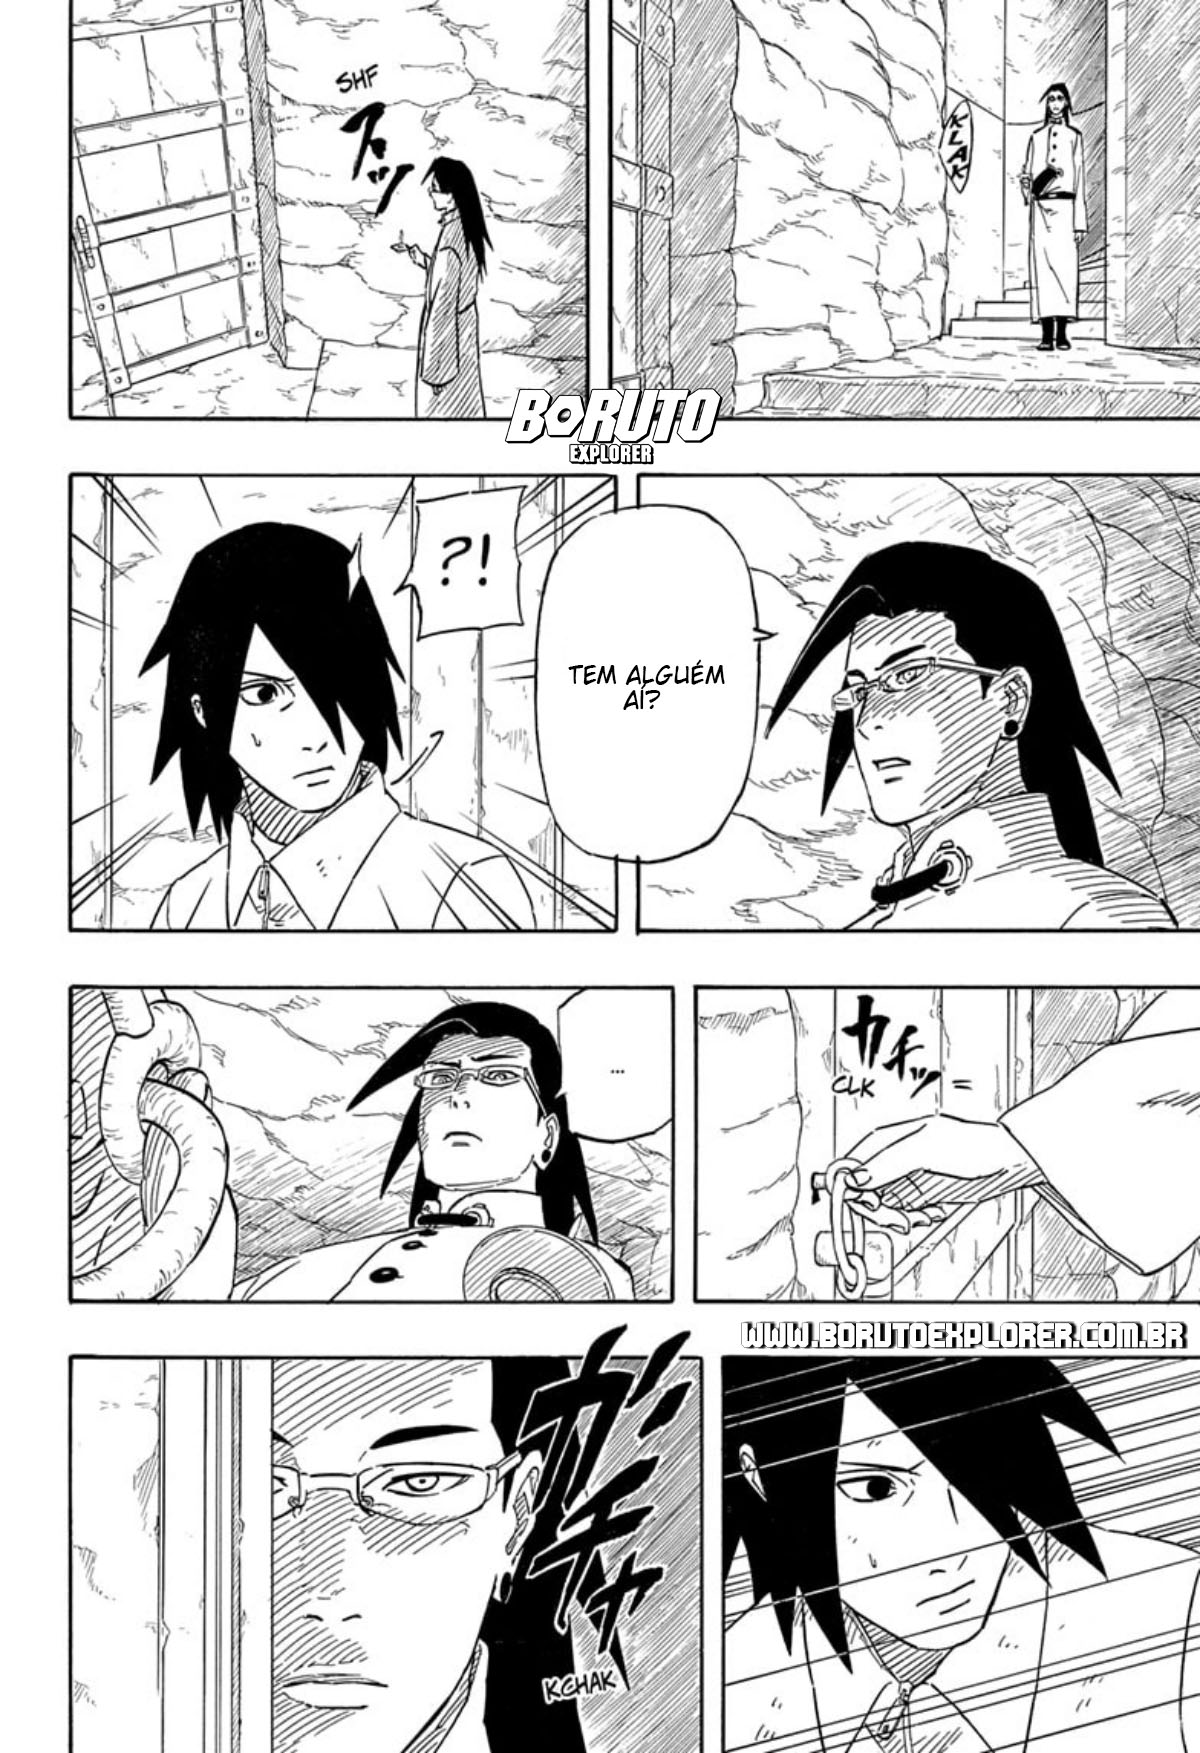 Análise do sexto capítulo do mangá de Sasuke Retsuden